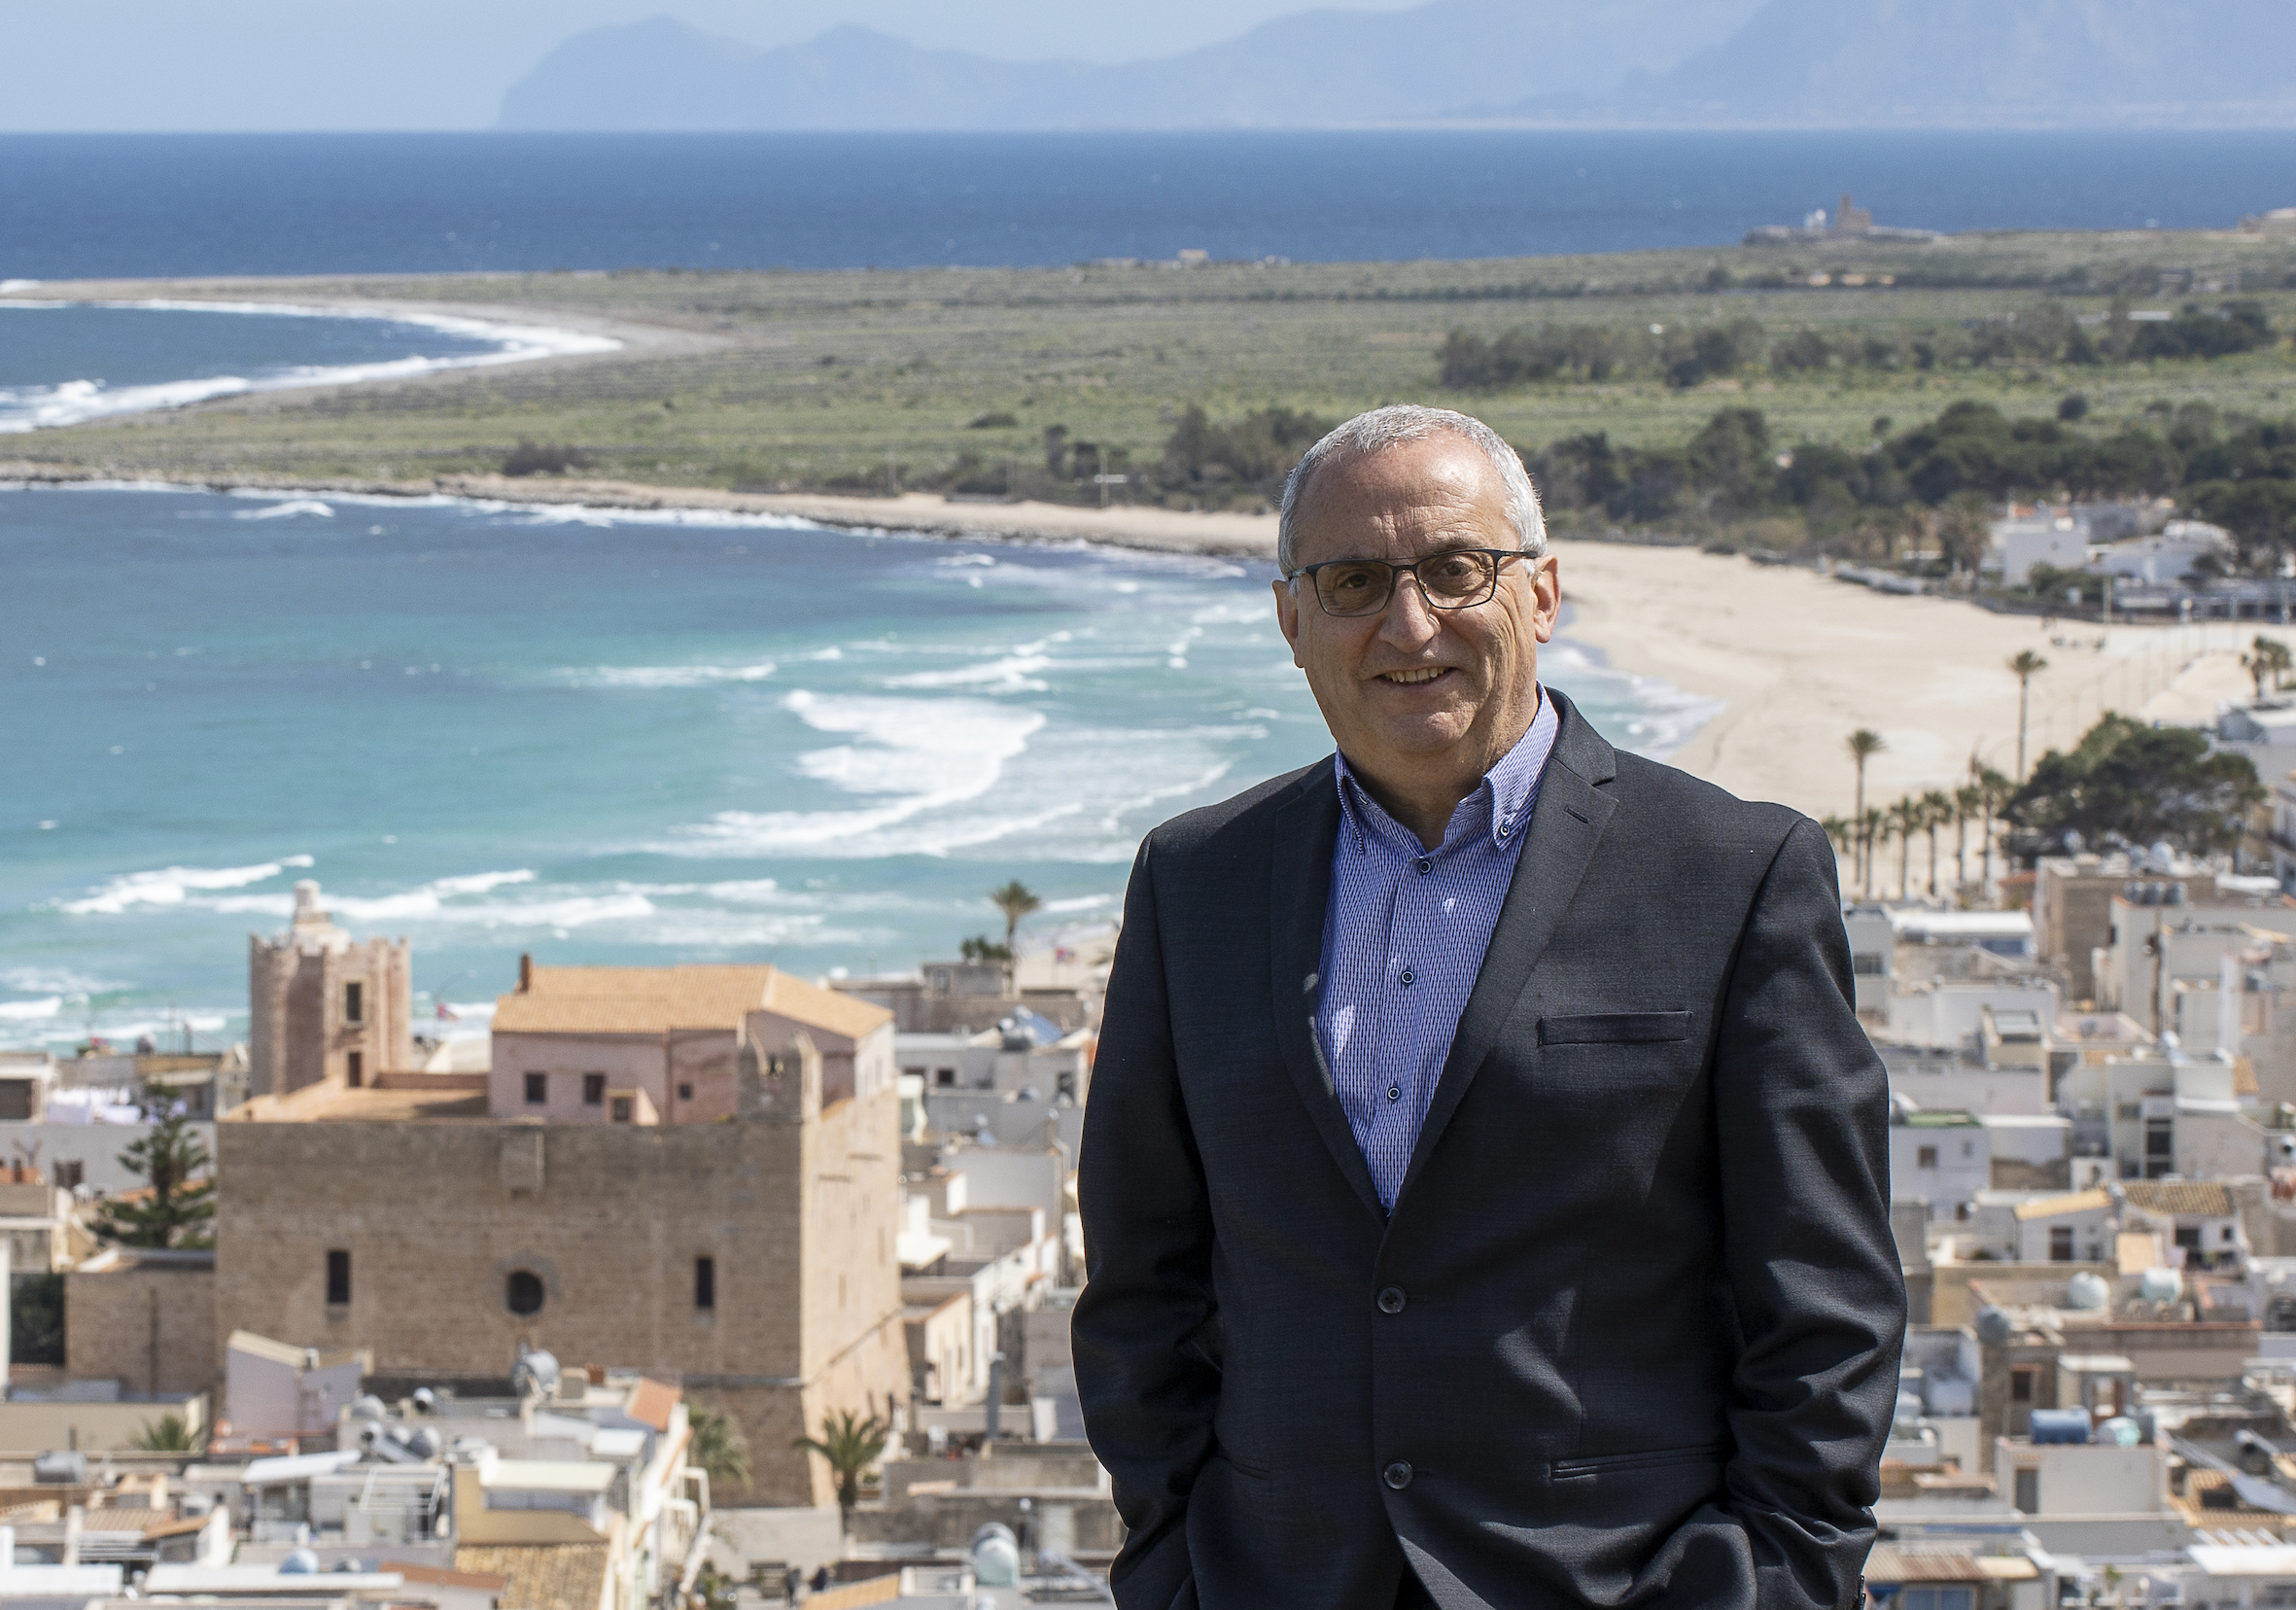 Francesco Sala candidato a sindaco di San Vito lo Capo: “Destagionalizzare il turismo”